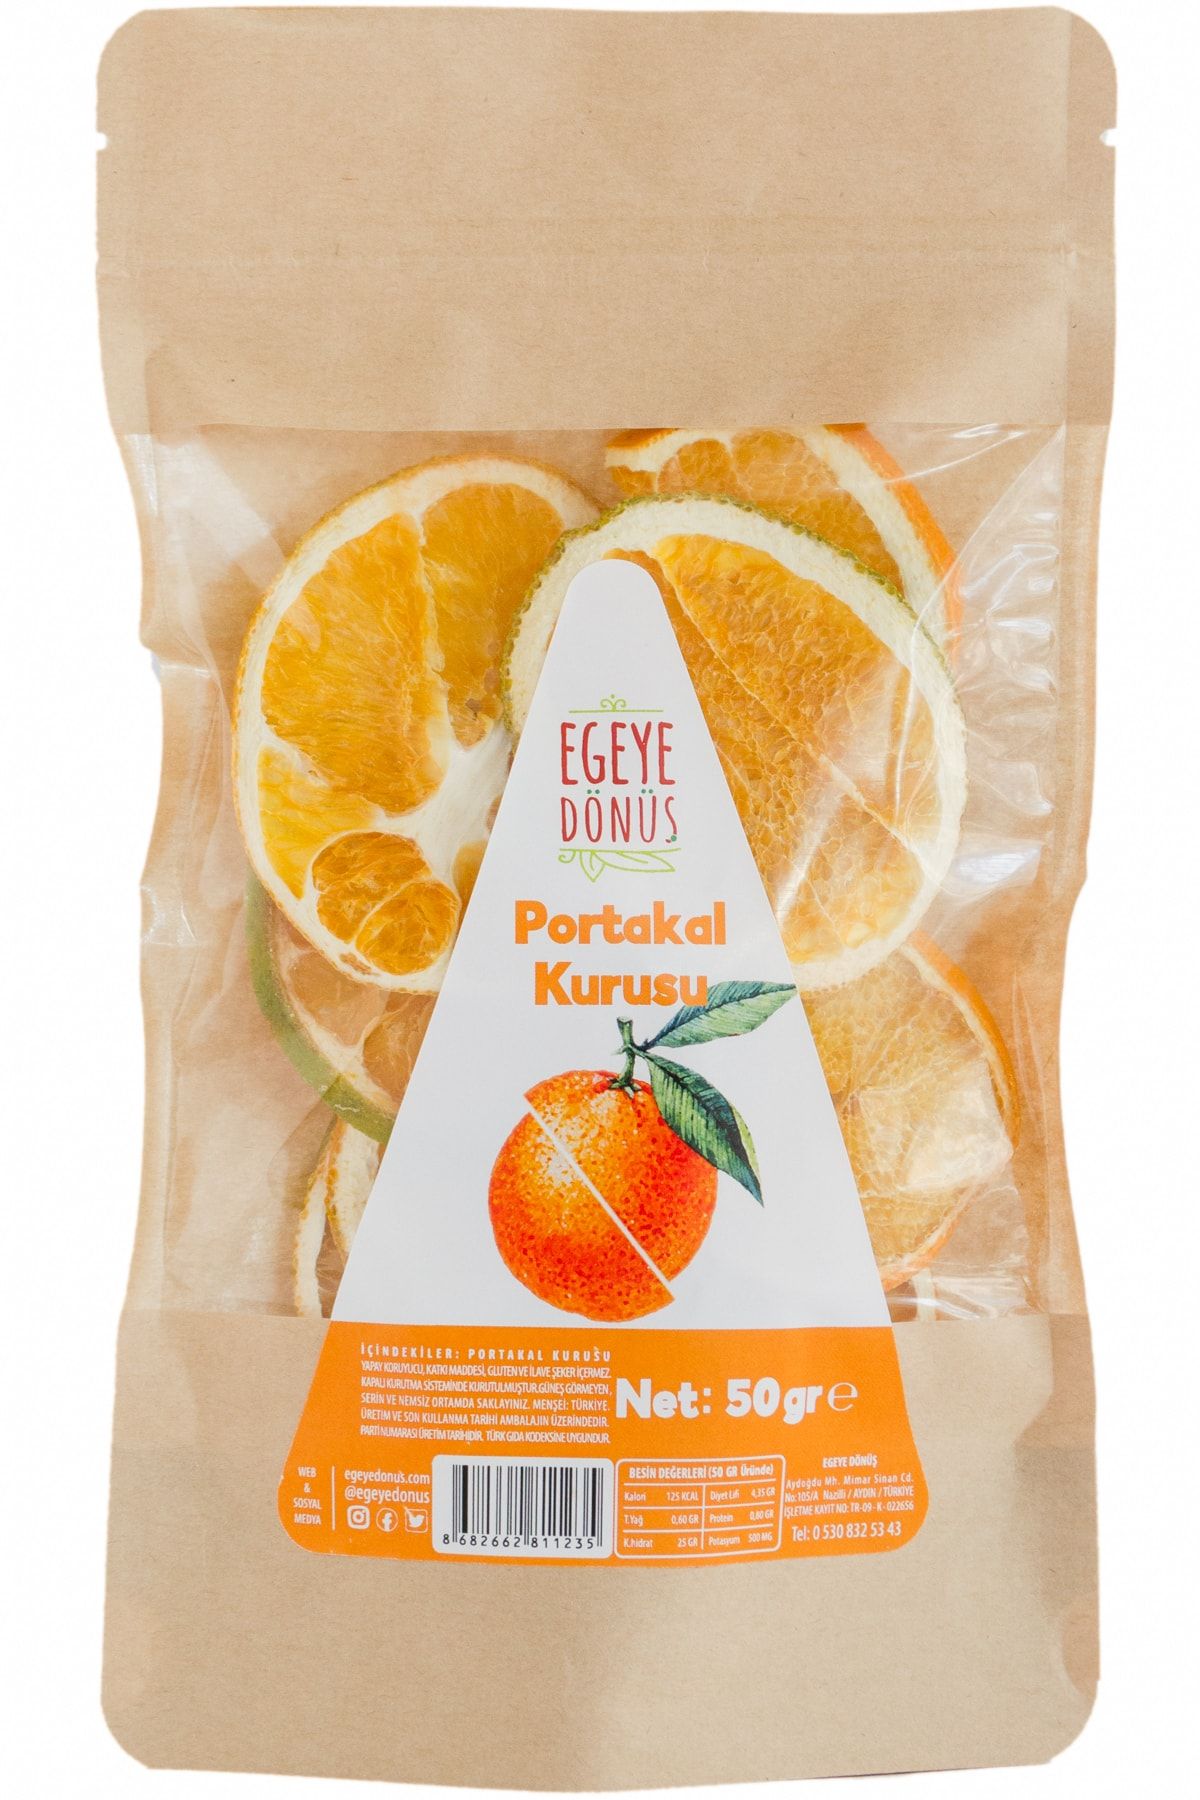 EGEYE DÖNÜŞ Şekersiz Portakal Meyvesi Kurusu Cipsi - 50 Gr. (YÜKSEK AROMA - KOKTEYL MEYVESİ -KORUYUCU İÇERMEZ)